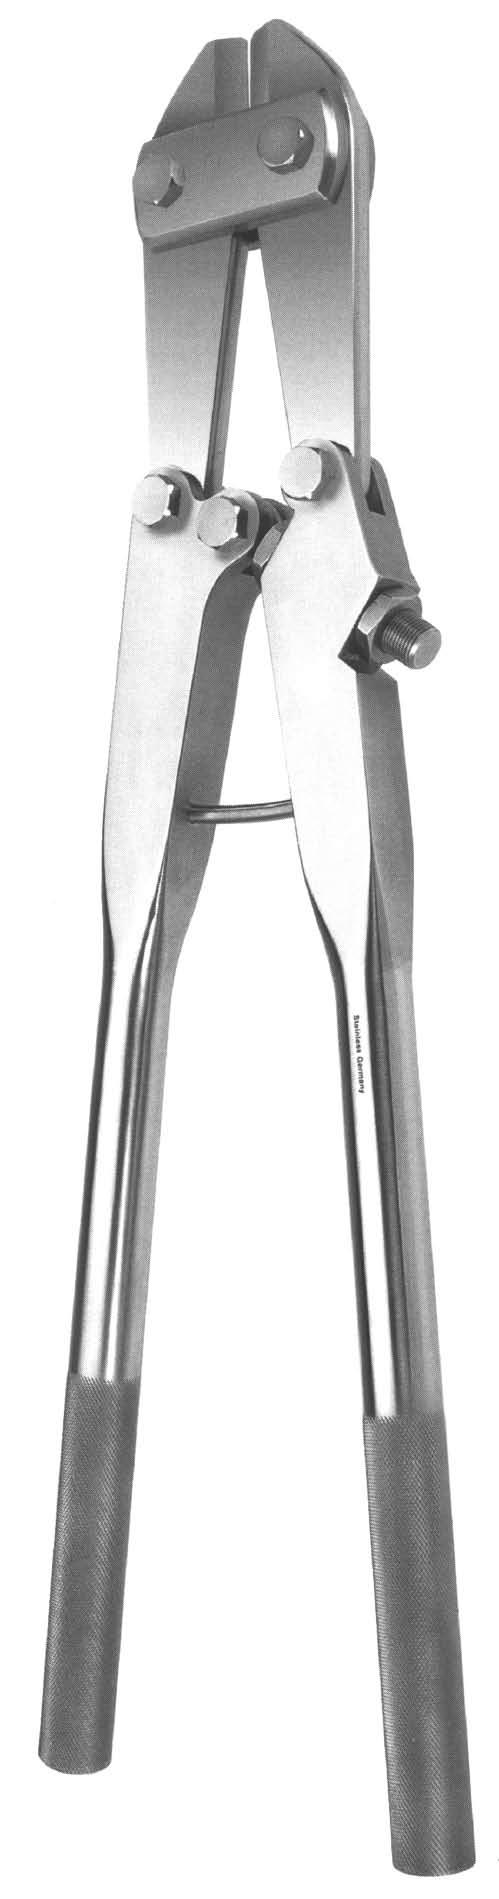 K Kleště štípací Bone Rongeurs Kleště štípací na drát Wire Cutting Forceps 1/3 116 91 0007 47,0 cm pro dráty, šrouby a hřeby do průměru 6,0 mm